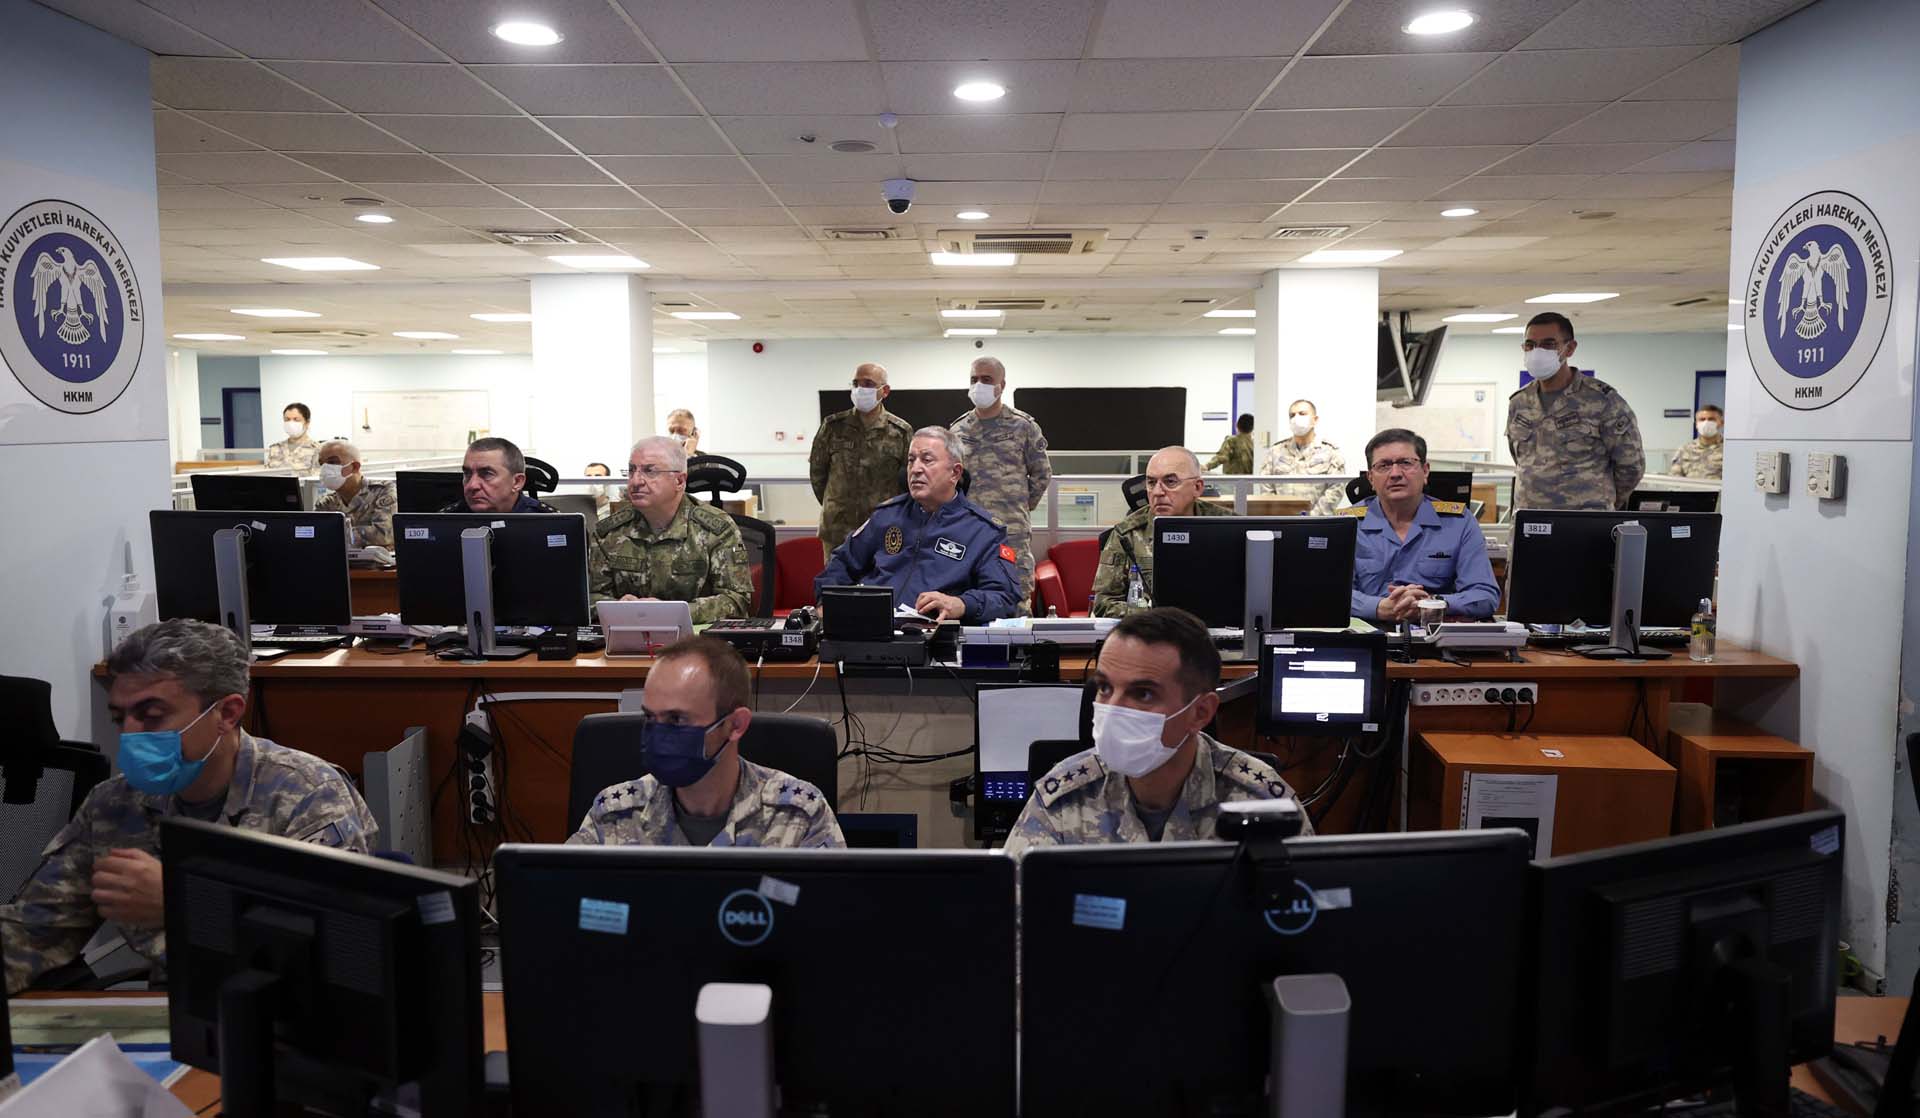 MSB duyurdu: Irak'ın kuzeyinde Pençe - Kilit Operasyonu başlatıldı! Komandolar ve Özel Kuvvetler sahaya indi 